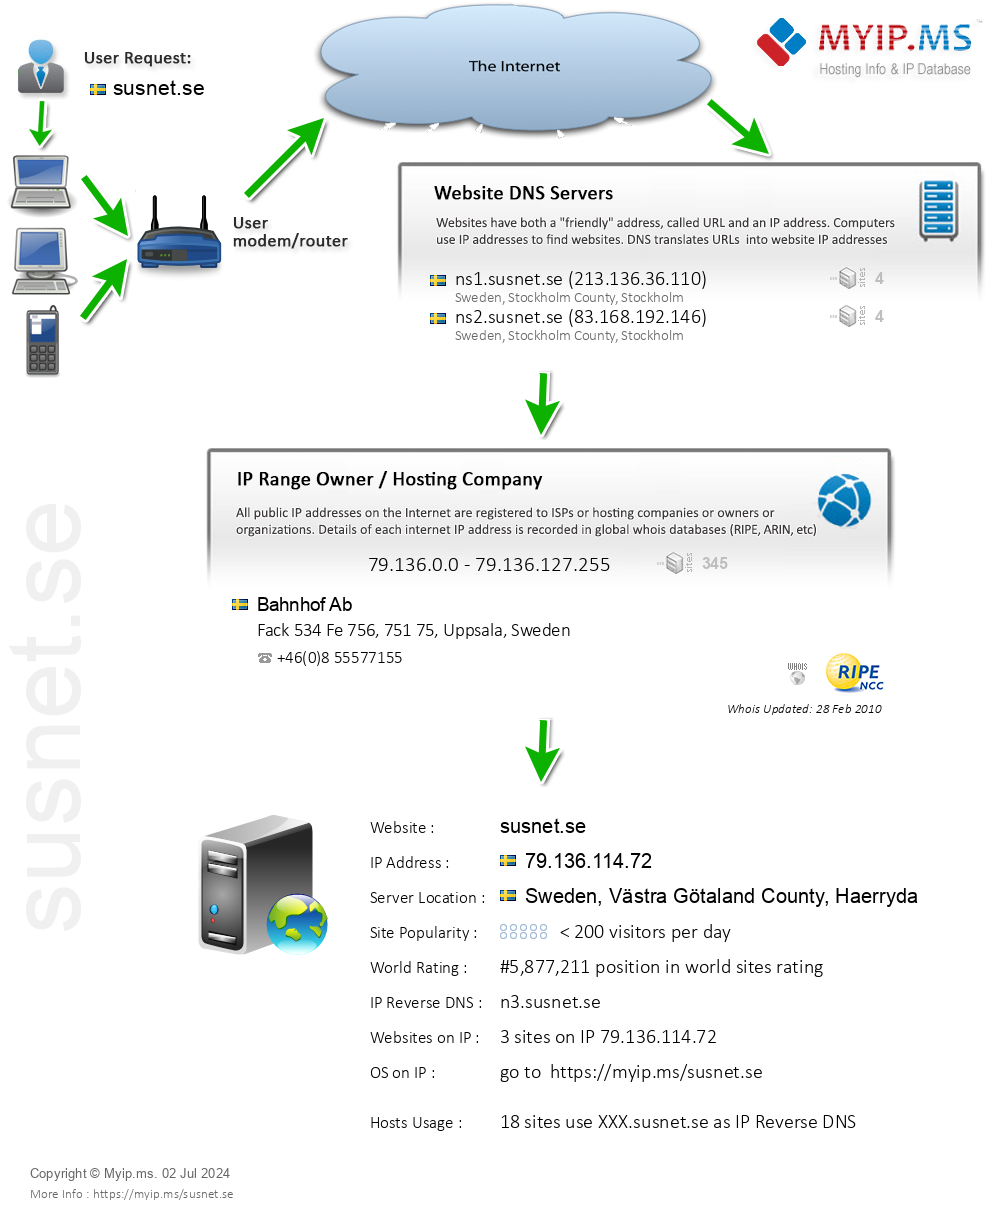 Susnet.se - Website Hosting Visual IP Diagram